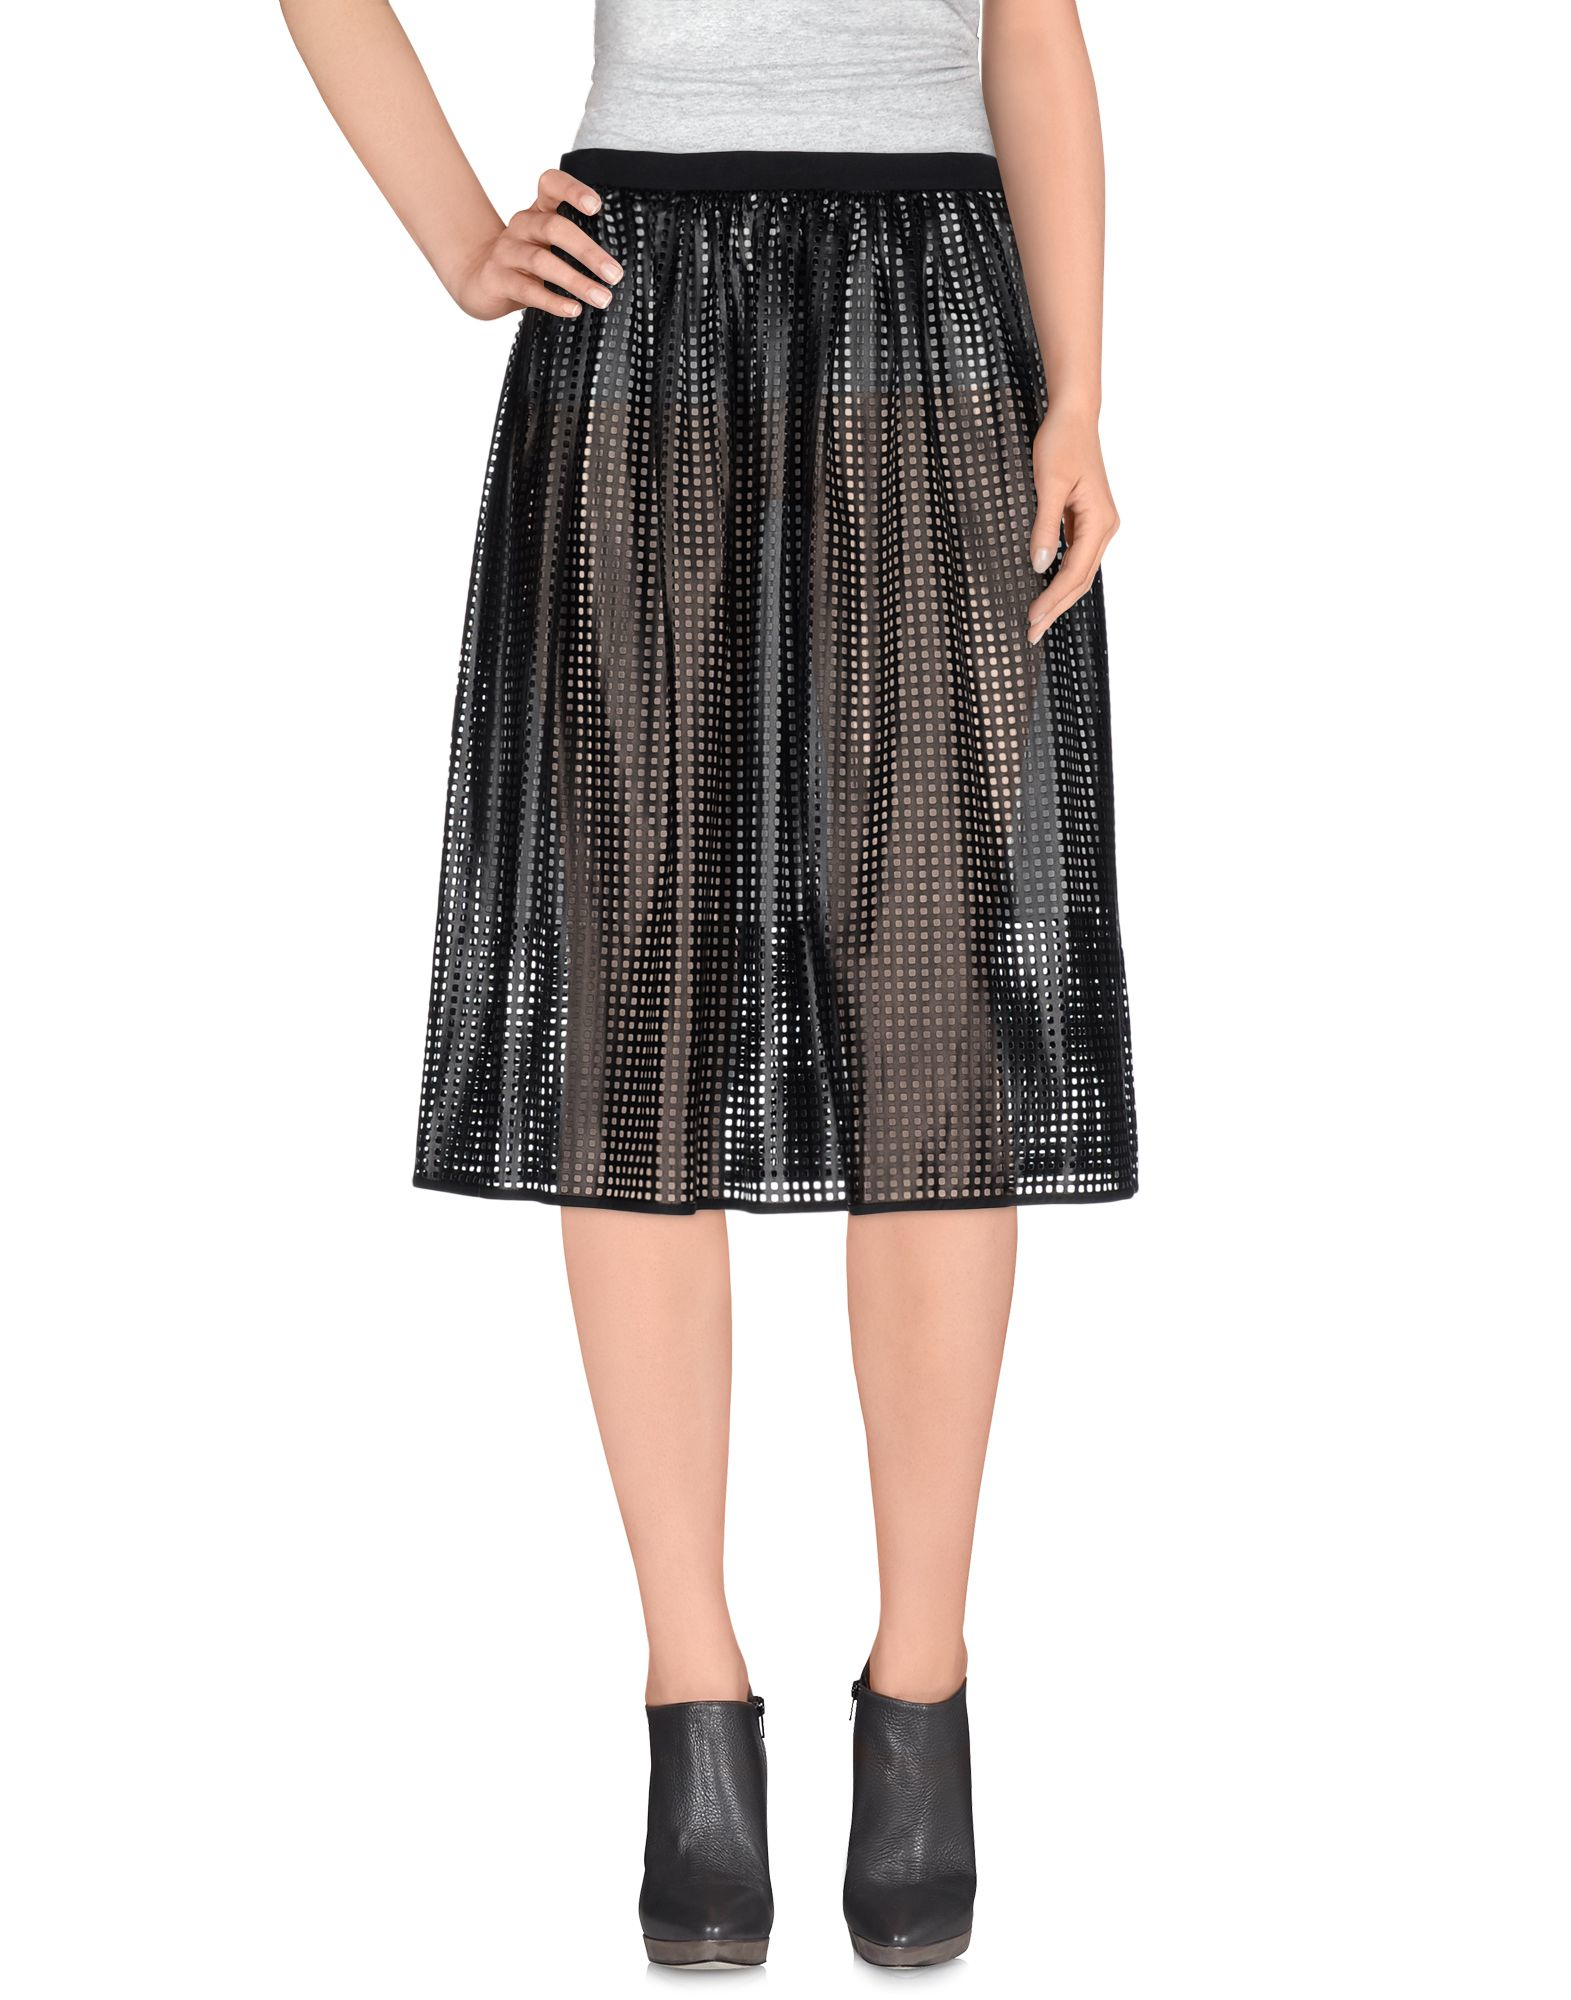 Lyst - Tibi 3/4 Length Skirt in Black